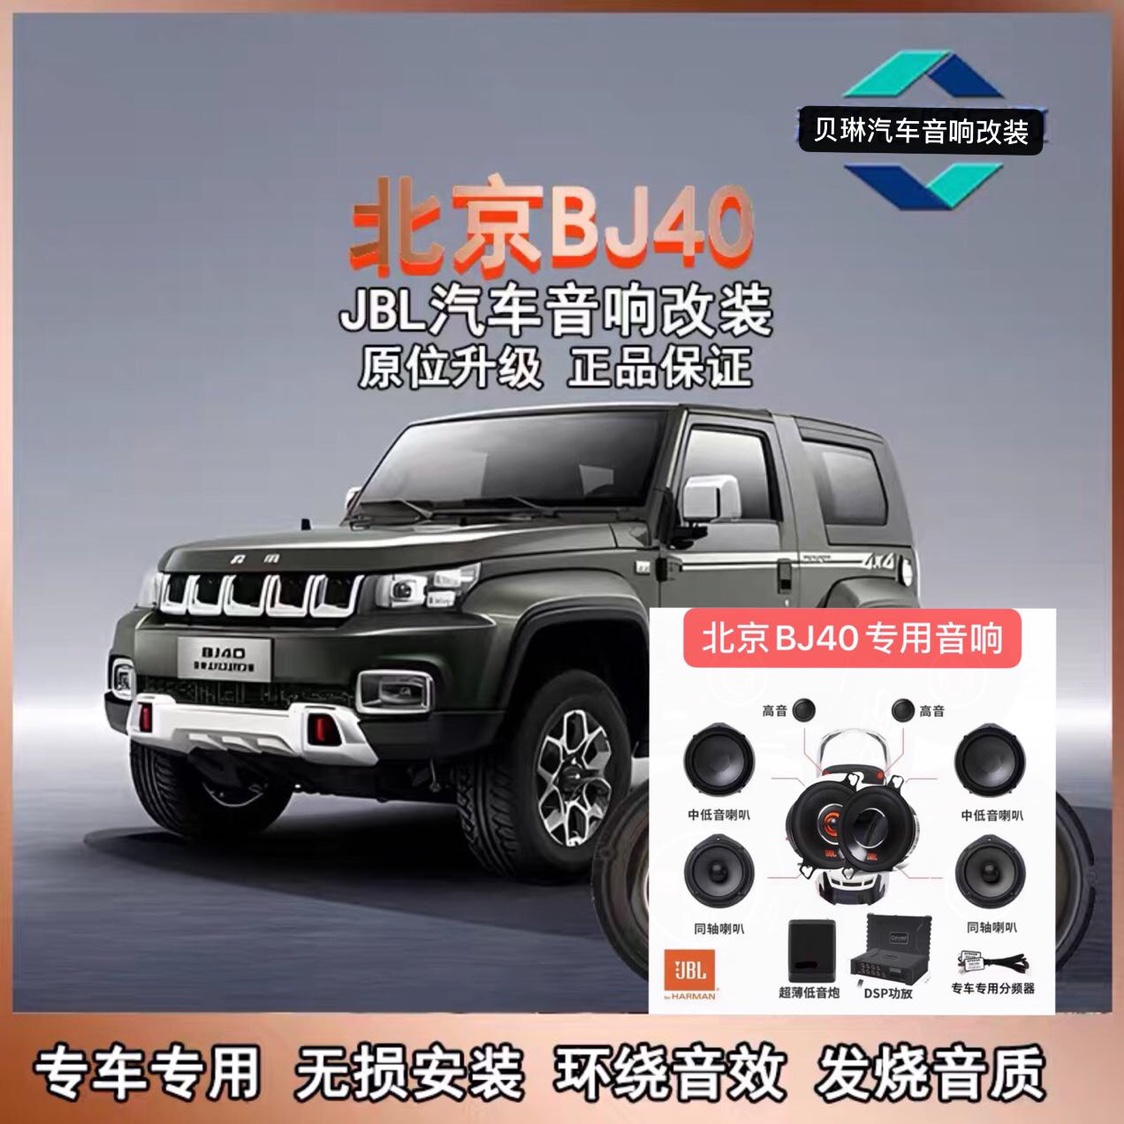 重低音 北京BJ40专用车载喇叭原位无损升级安装 JBL汽车音响改装